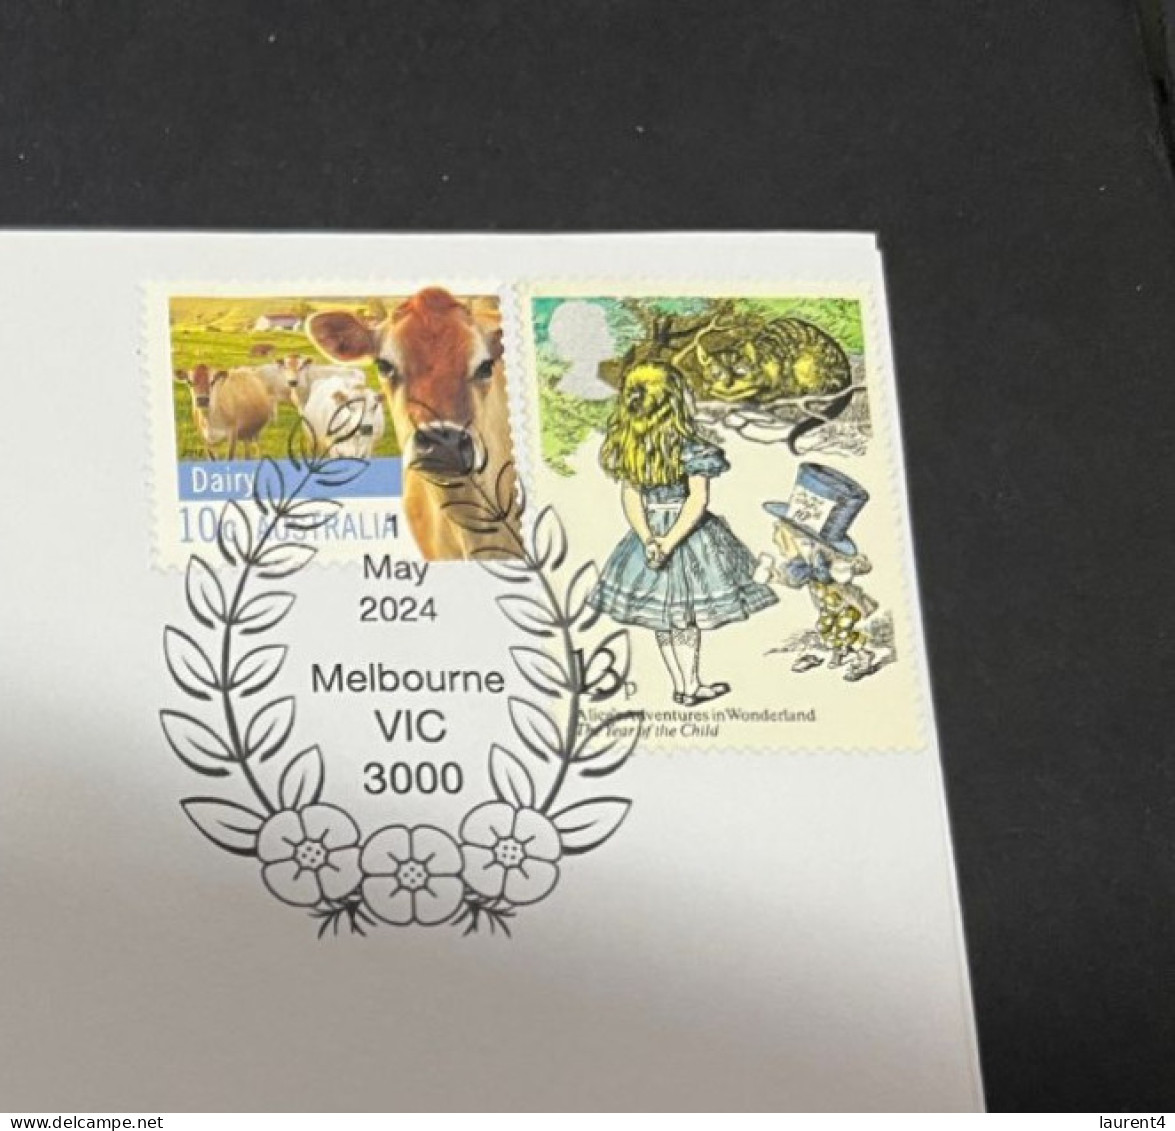 21-5-2024 (5 Z 42) Alice In Wonderland (UK + OZ Stamps) UK Year Of Child Stamp - Märchen, Sagen & Legenden